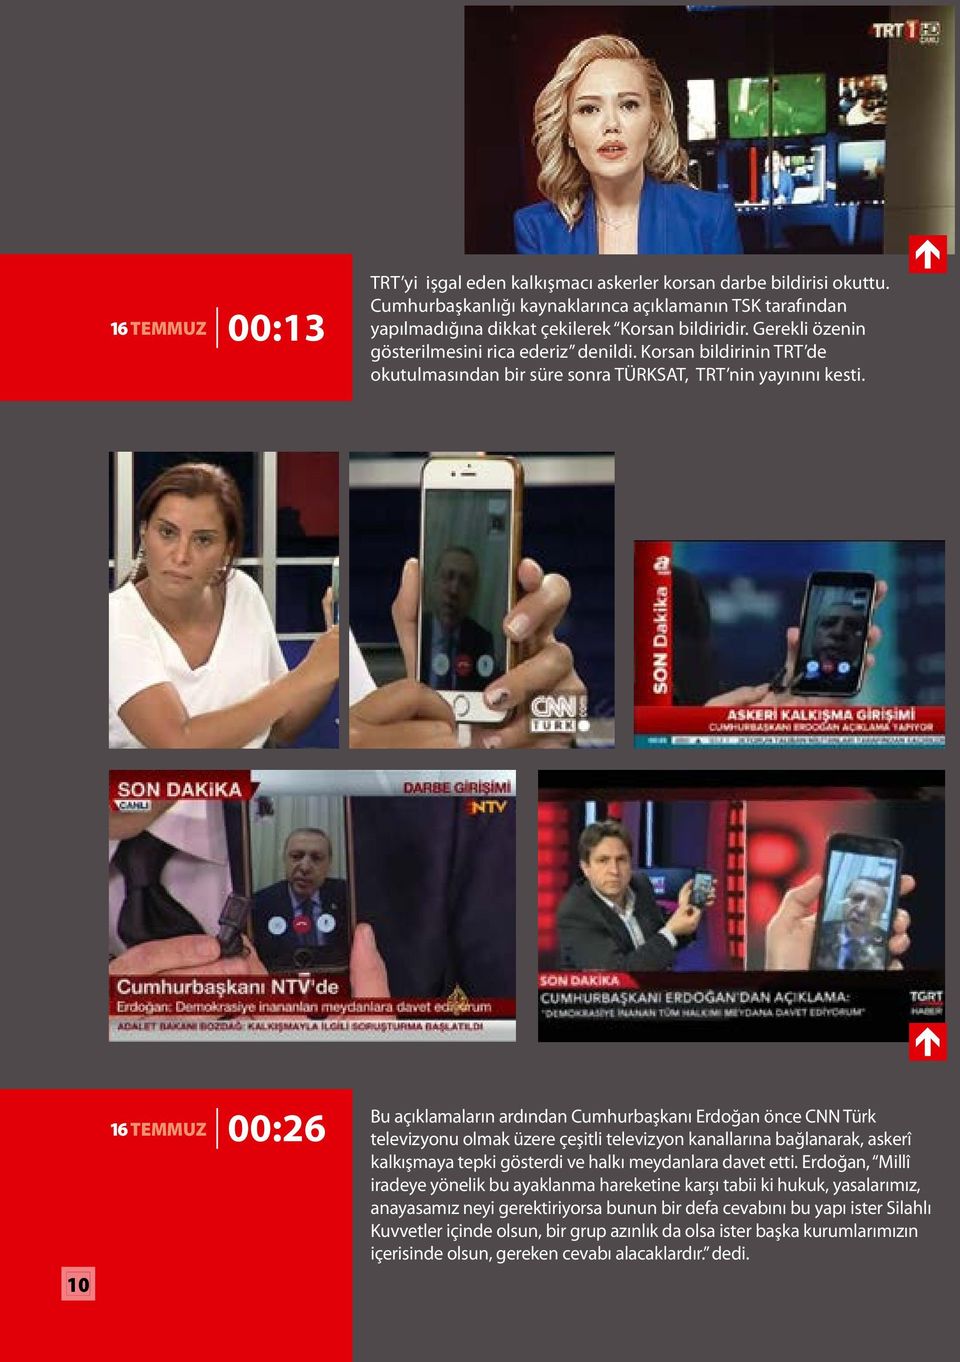 10 16 TEMMUZ 00:26 Bu açıklamaların ardından Cumhurbaşkanı Erdoğan önce CNN Türk televizyonu olmak üzere çeşitli televizyon kanallarına bağlanarak, askerî kalkışmaya tepki gösterdi ve halkı